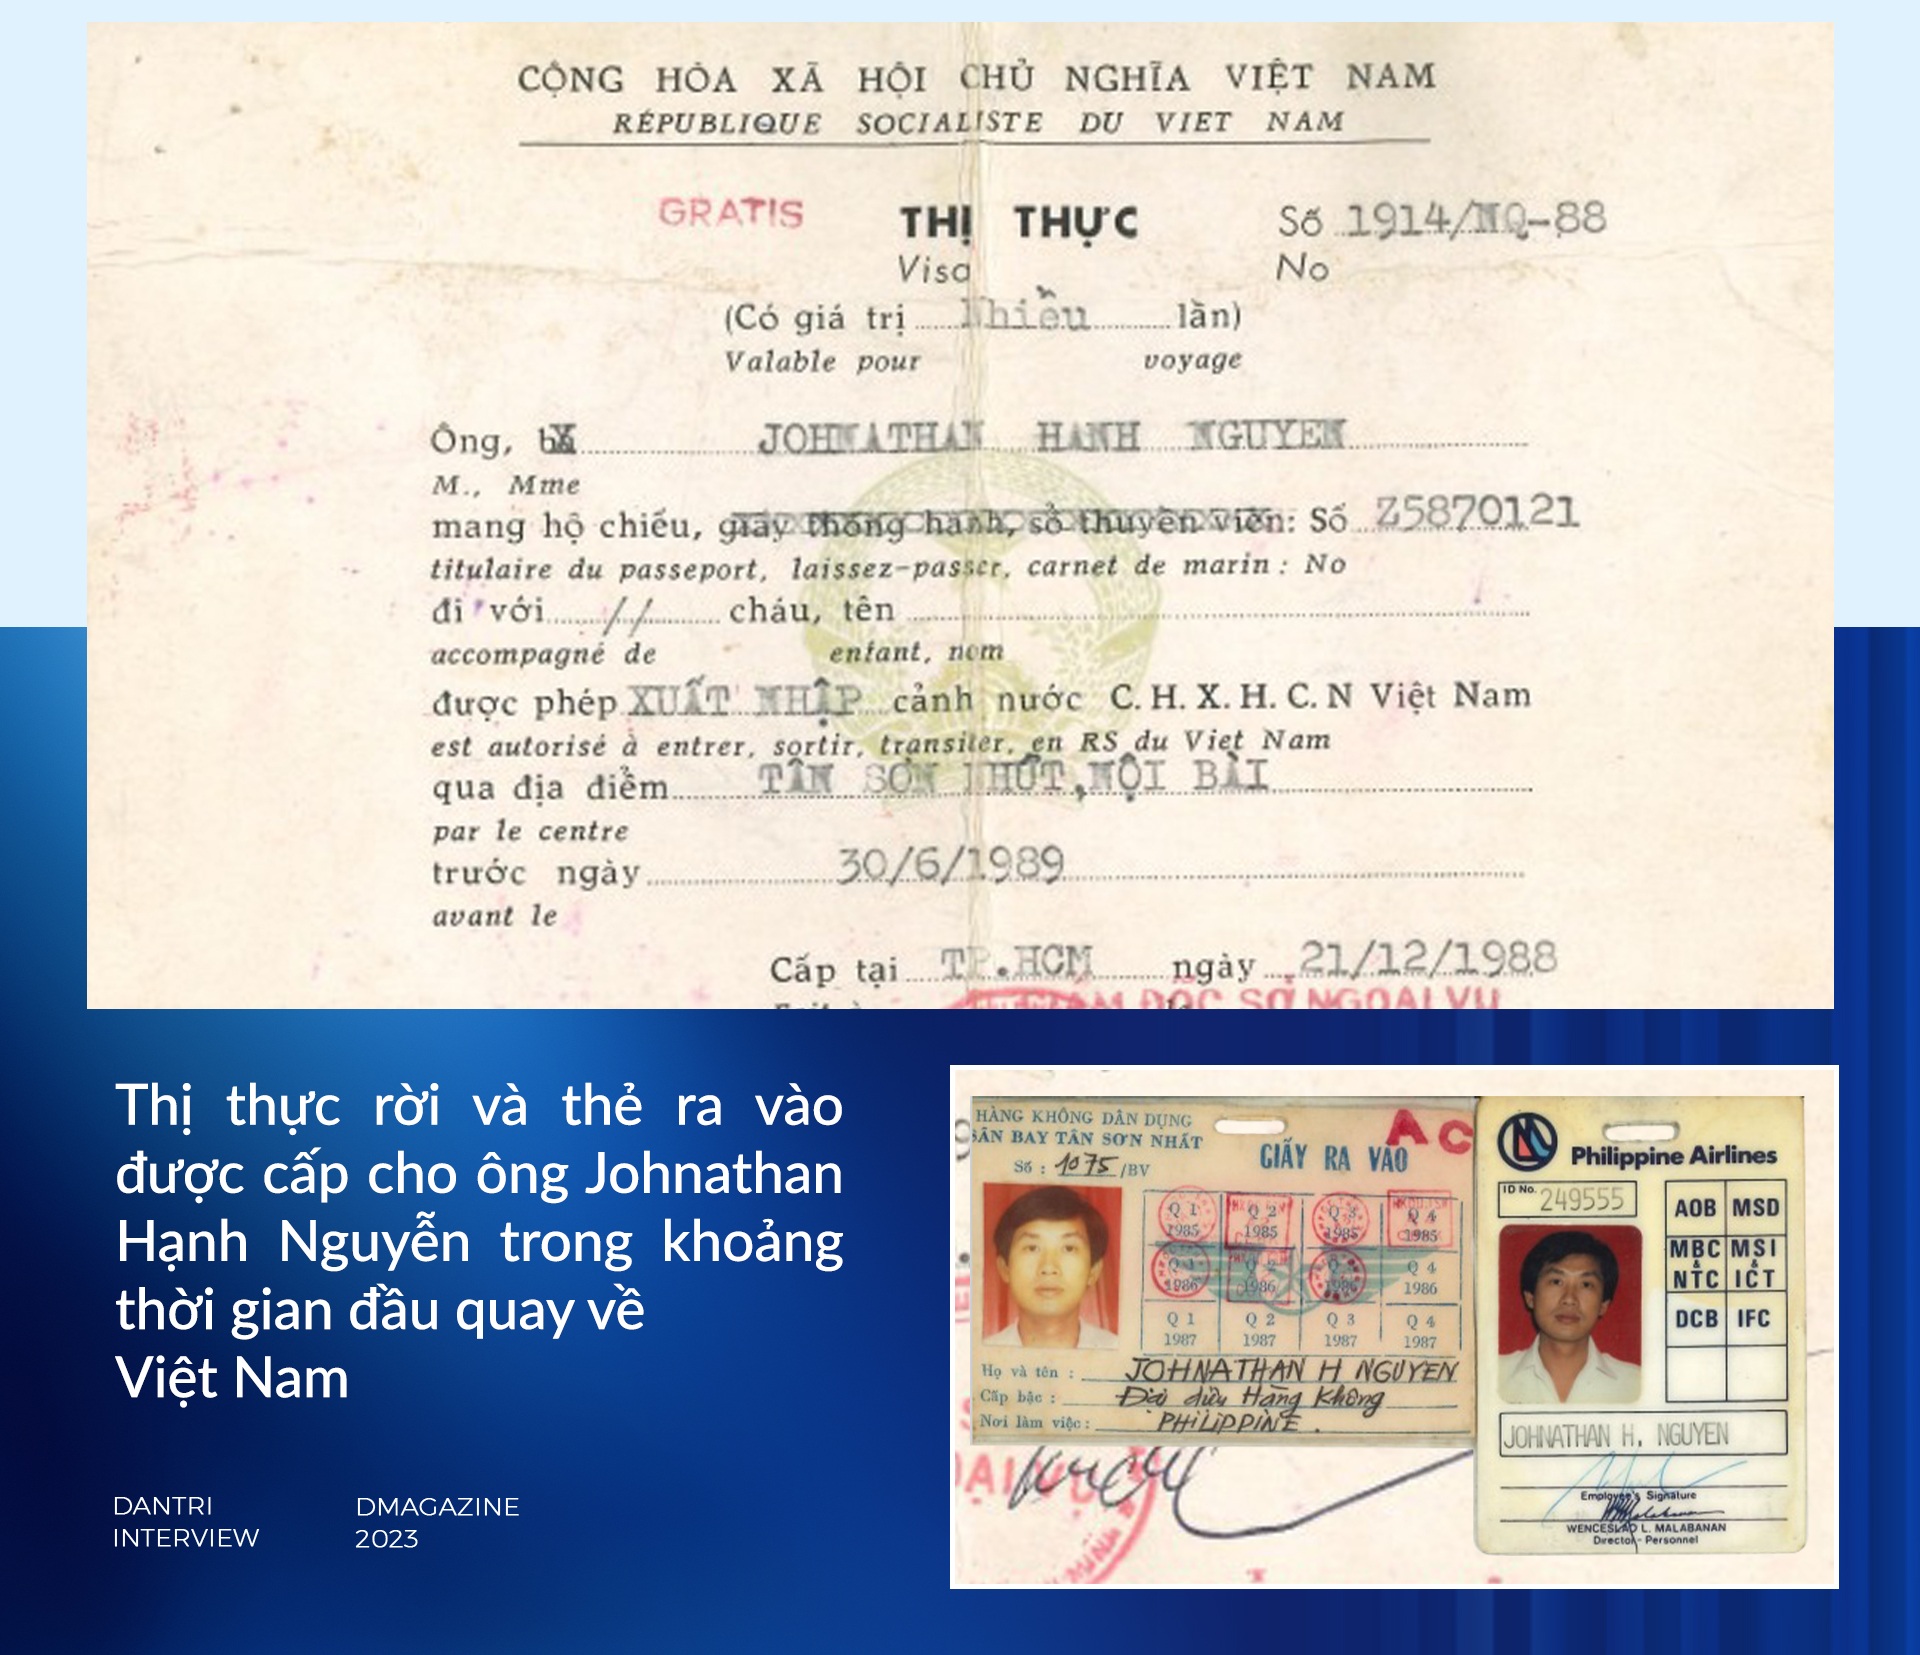 Cuộc gặp với cố Thủ tướng Phạm Văn Đồng thay đổi cuộc đời ông Johnathan Hạnh Nguyễn - 5